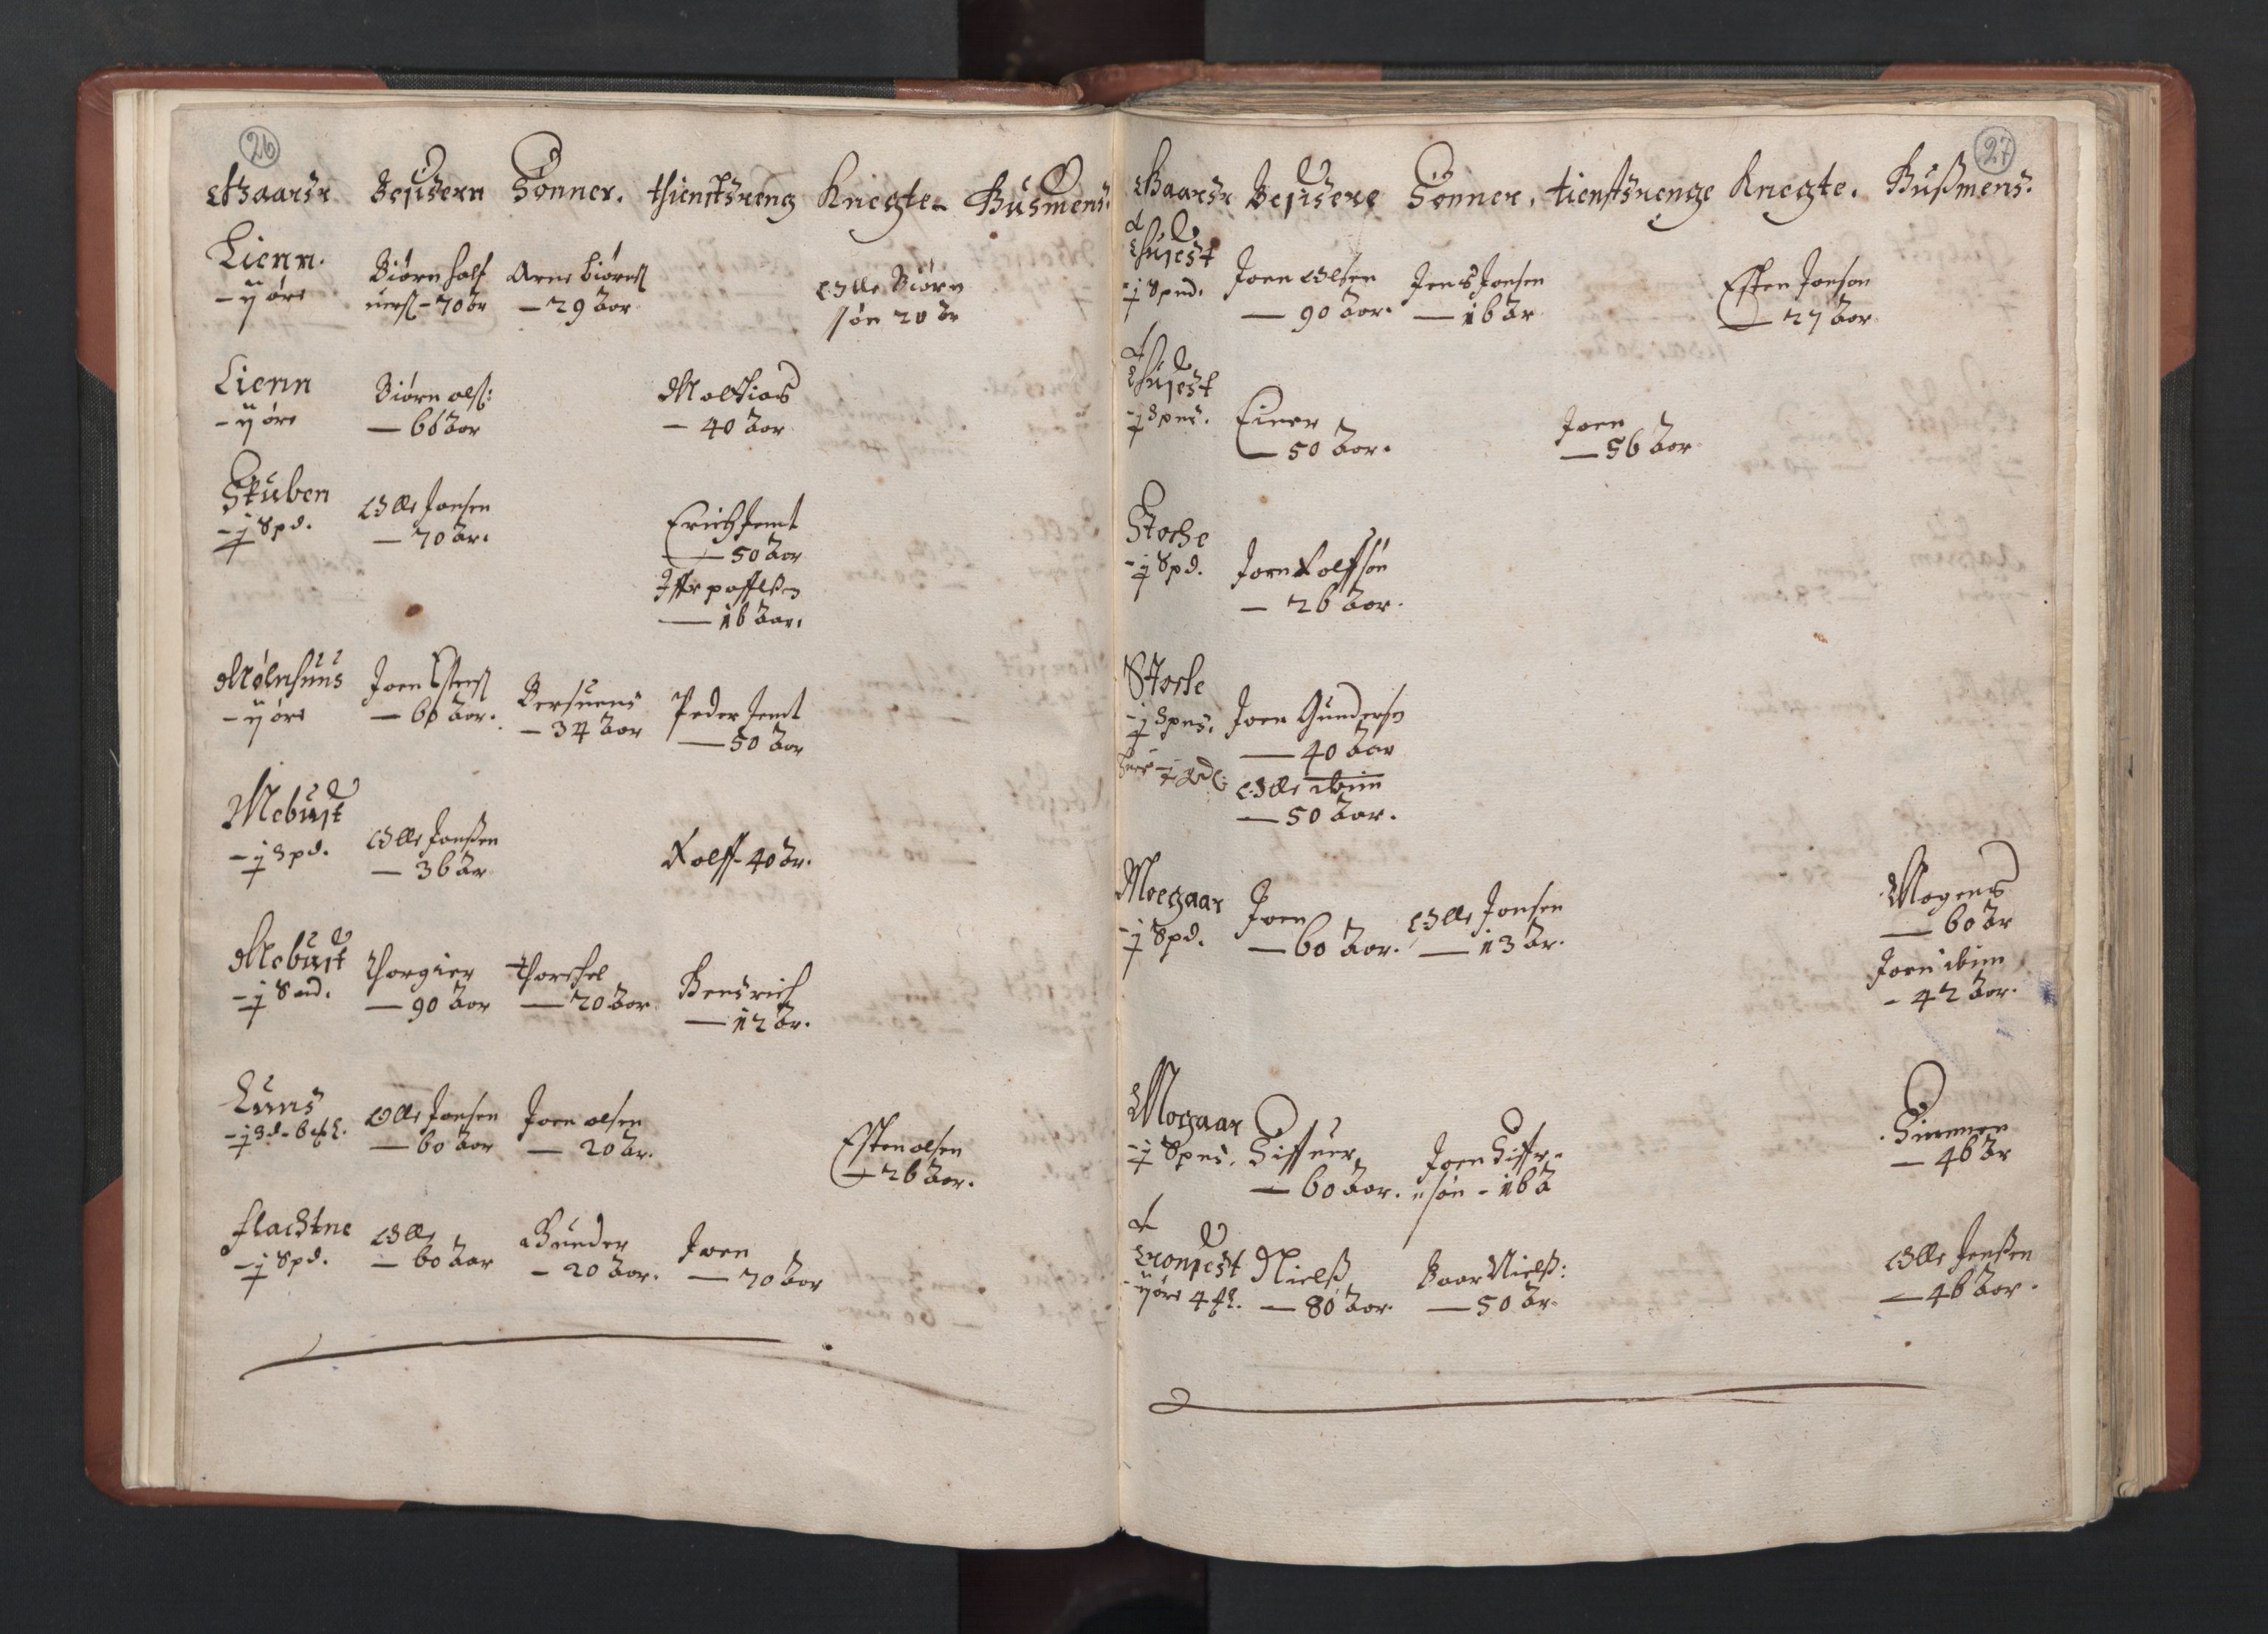 RA, Bailiff's Census 1664-1666, no. 19: Fosen fogderi, Inderøy fogderi, Selbu fogderi, Namdal fogderi and Stjørdal fogderi, 1664-1665, p. 26-27